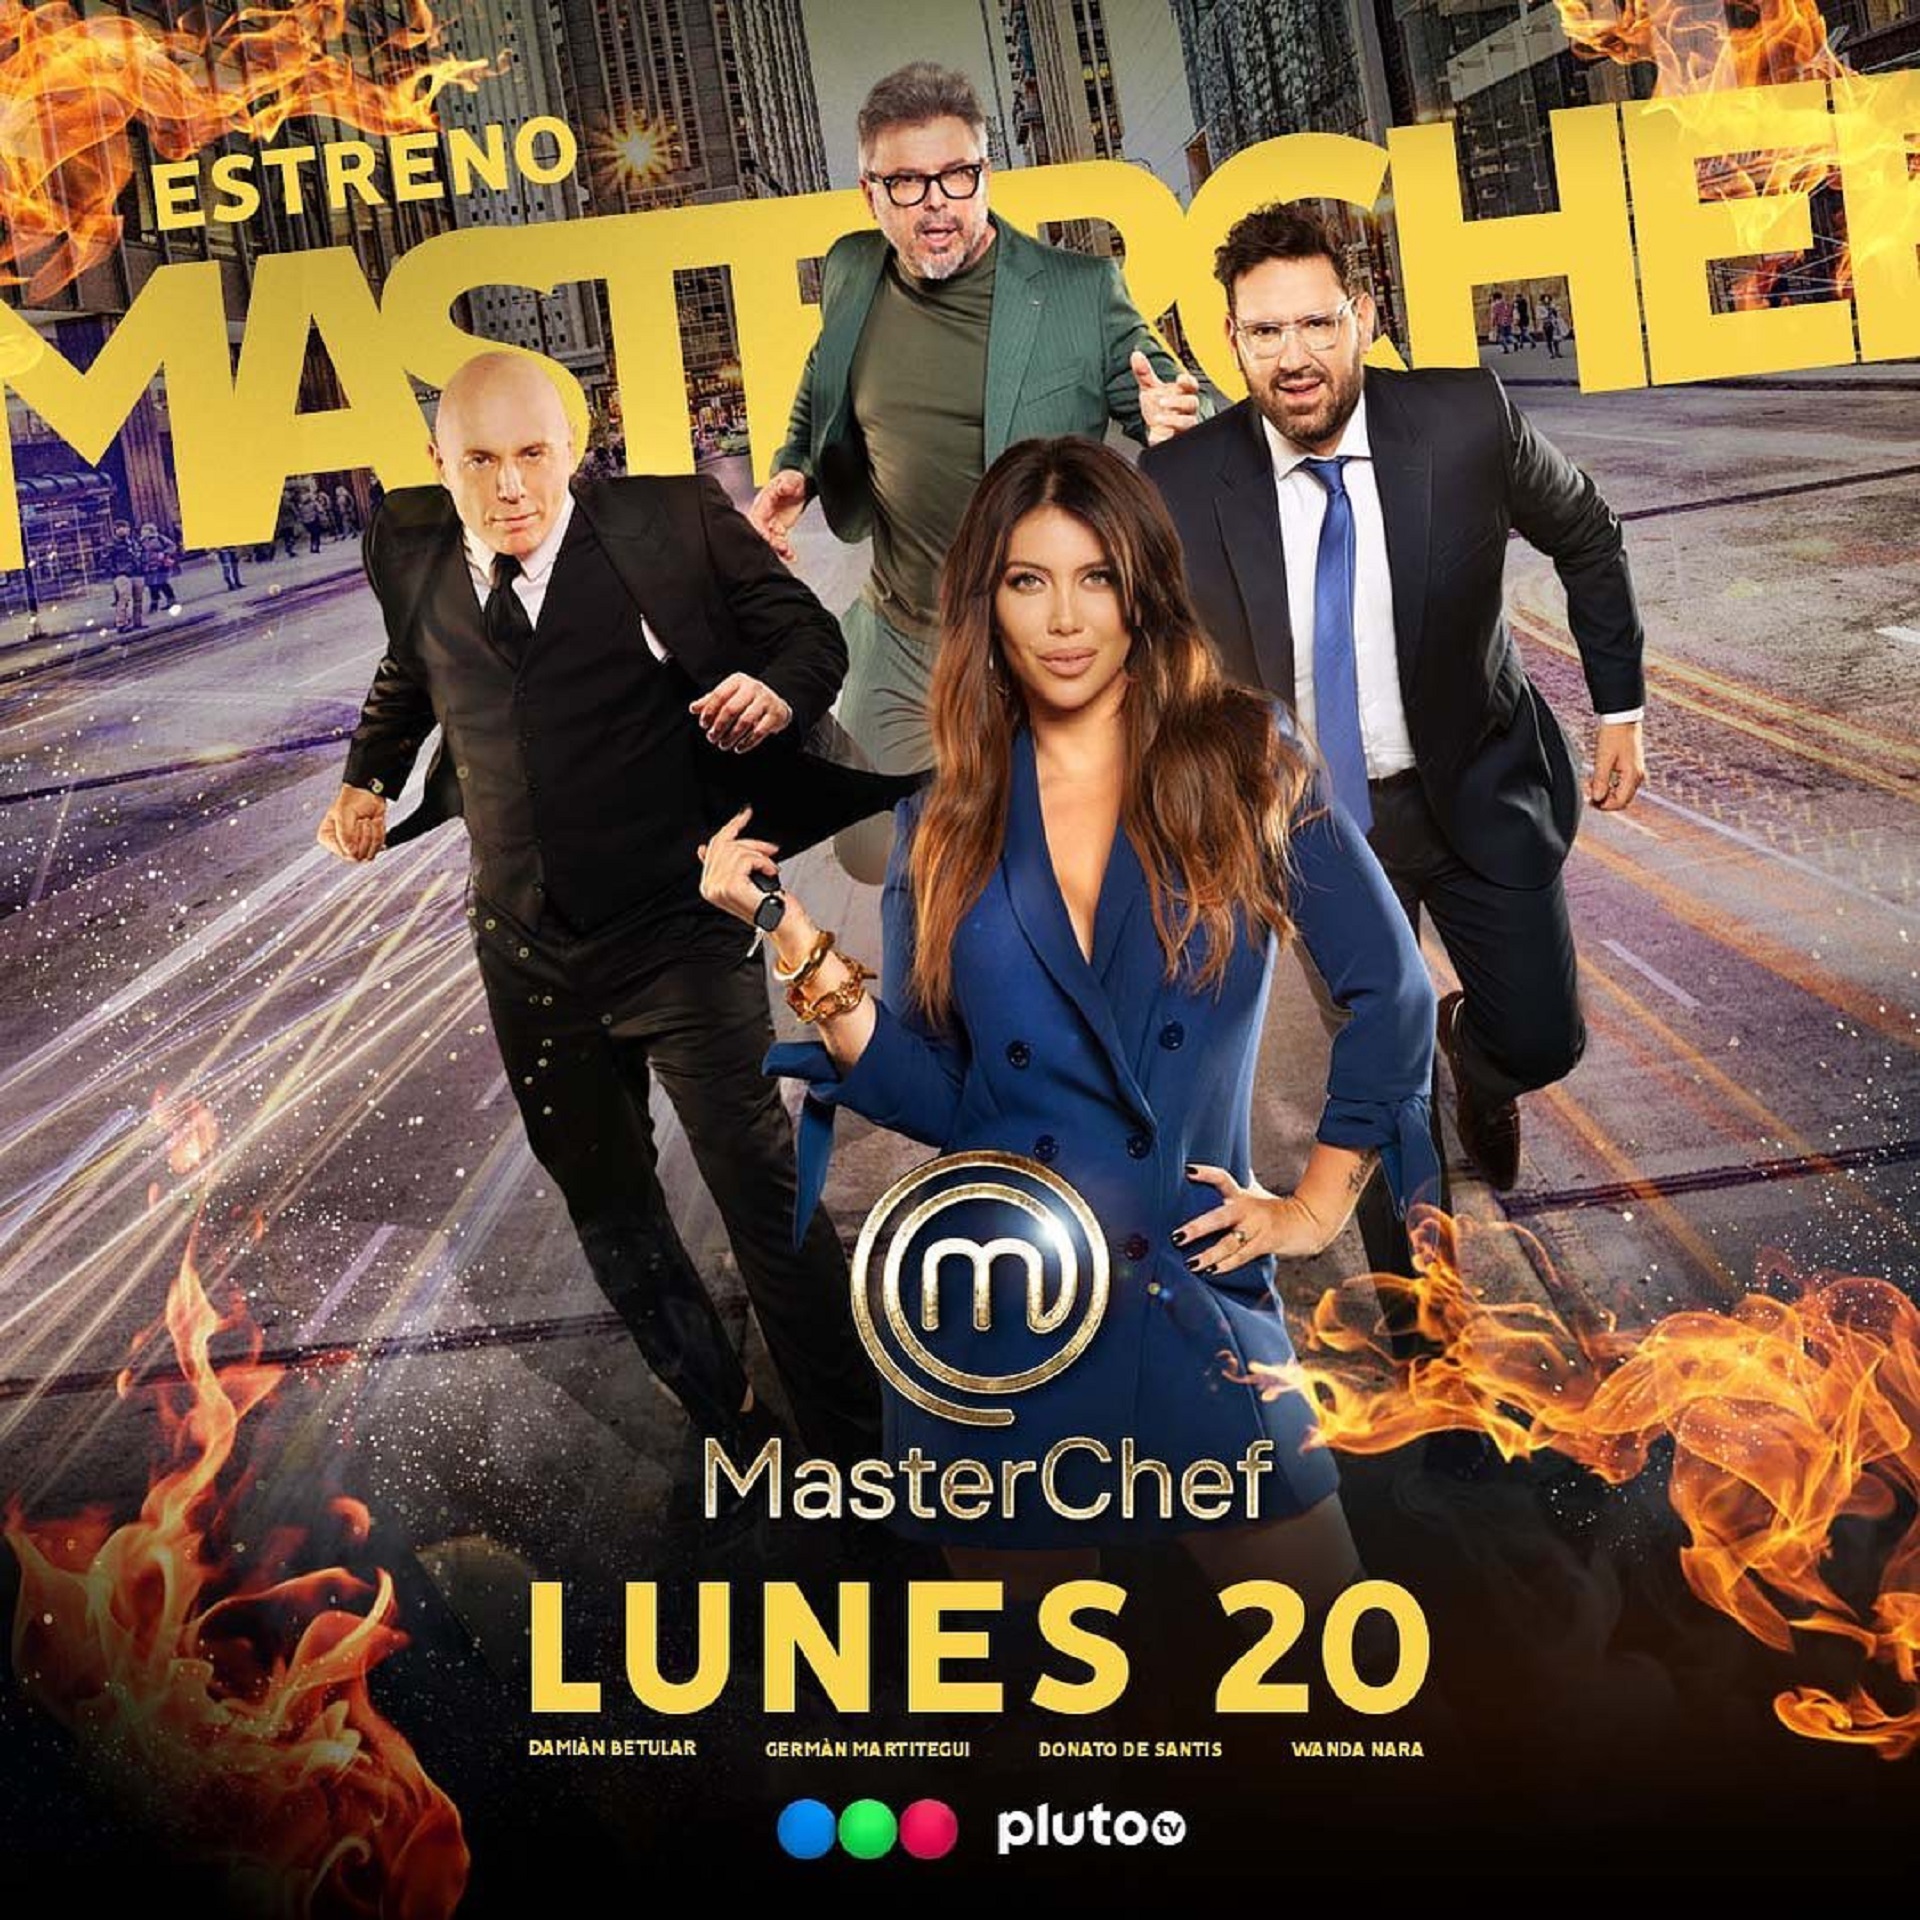 MasterChef comienza el lunes 20 de marzo a las 21:30 por Telefe